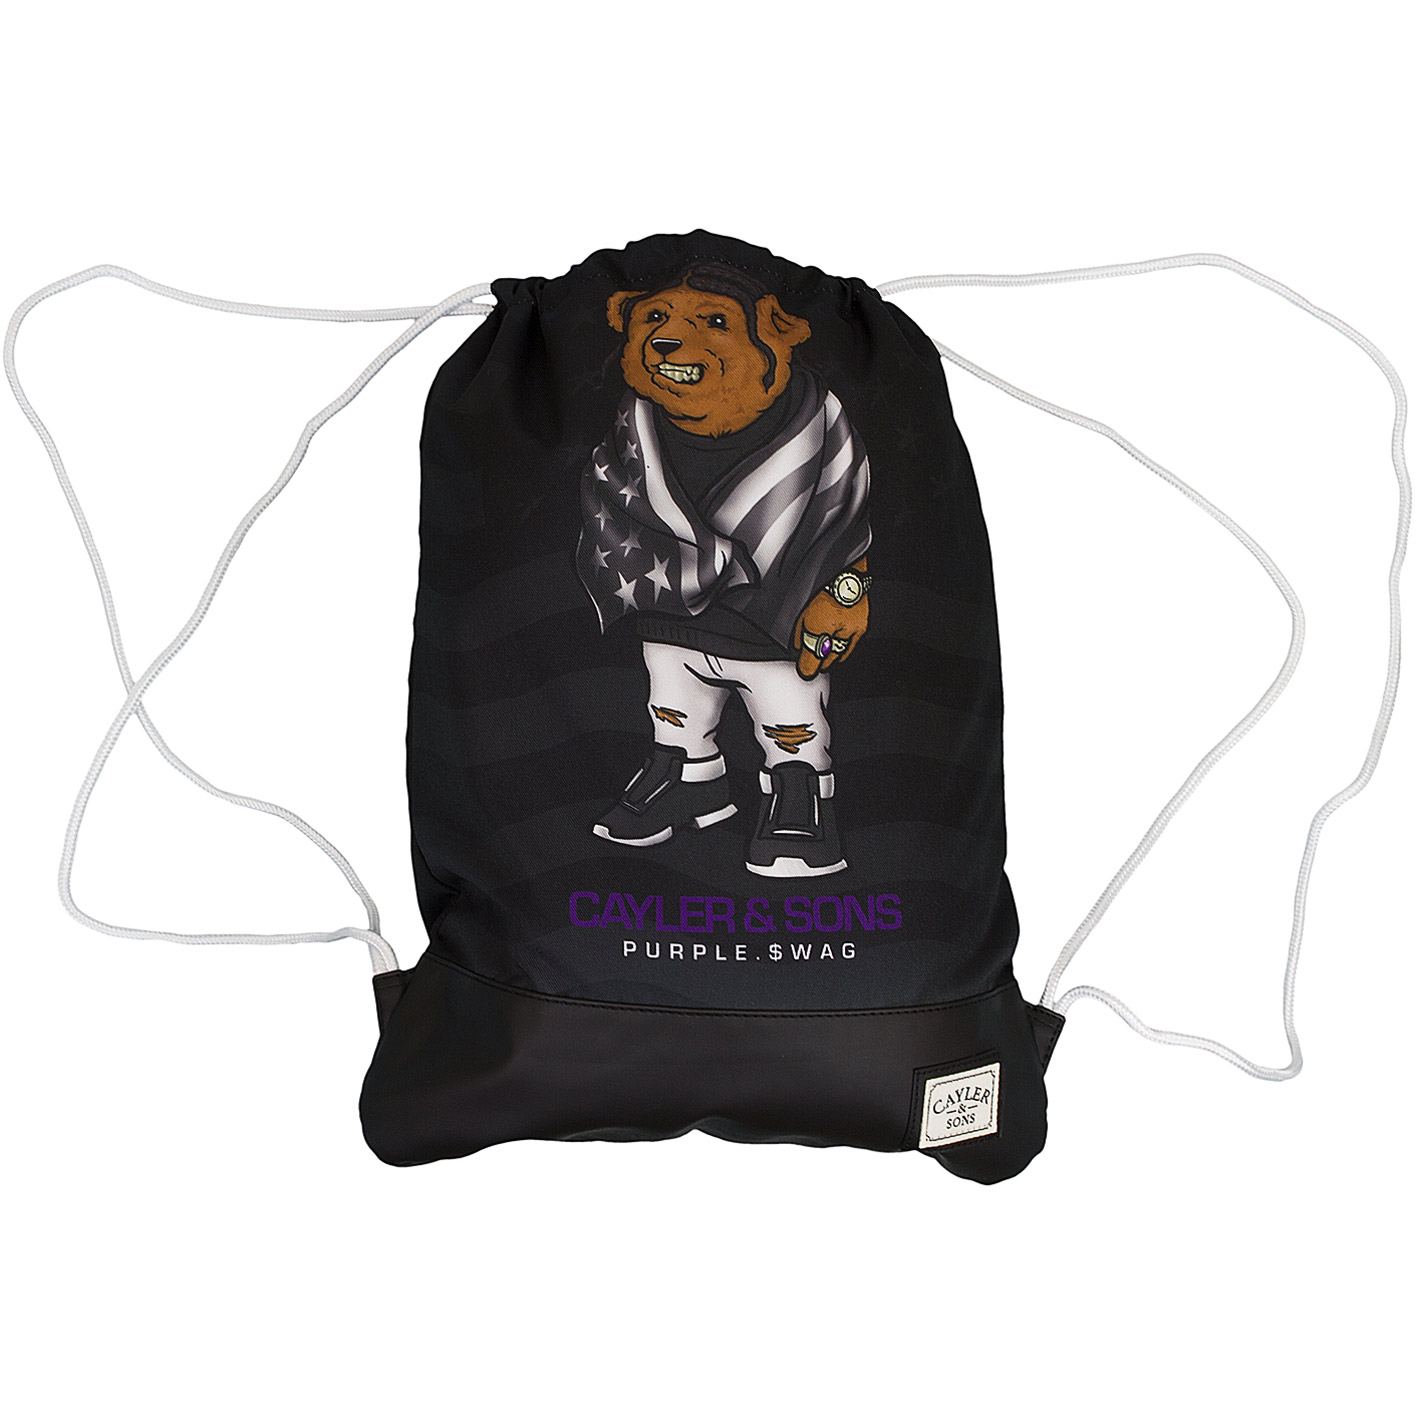 ☆ Cayler & Sons Gym Bag White Label Purple Swag schwarz - hier bestellen!